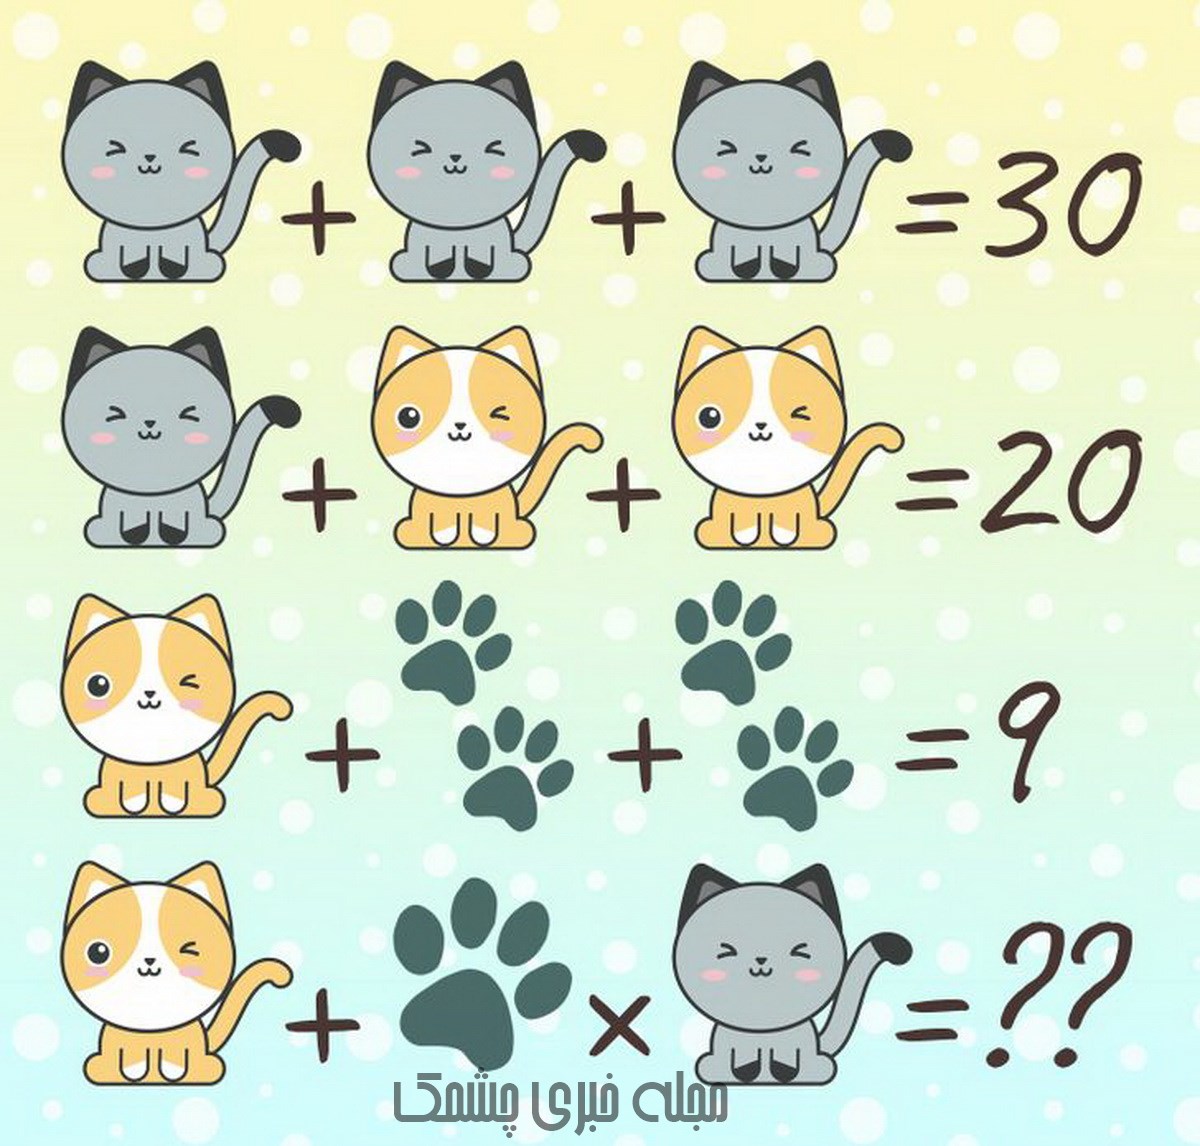 سوال تصویری ریاضی جالب